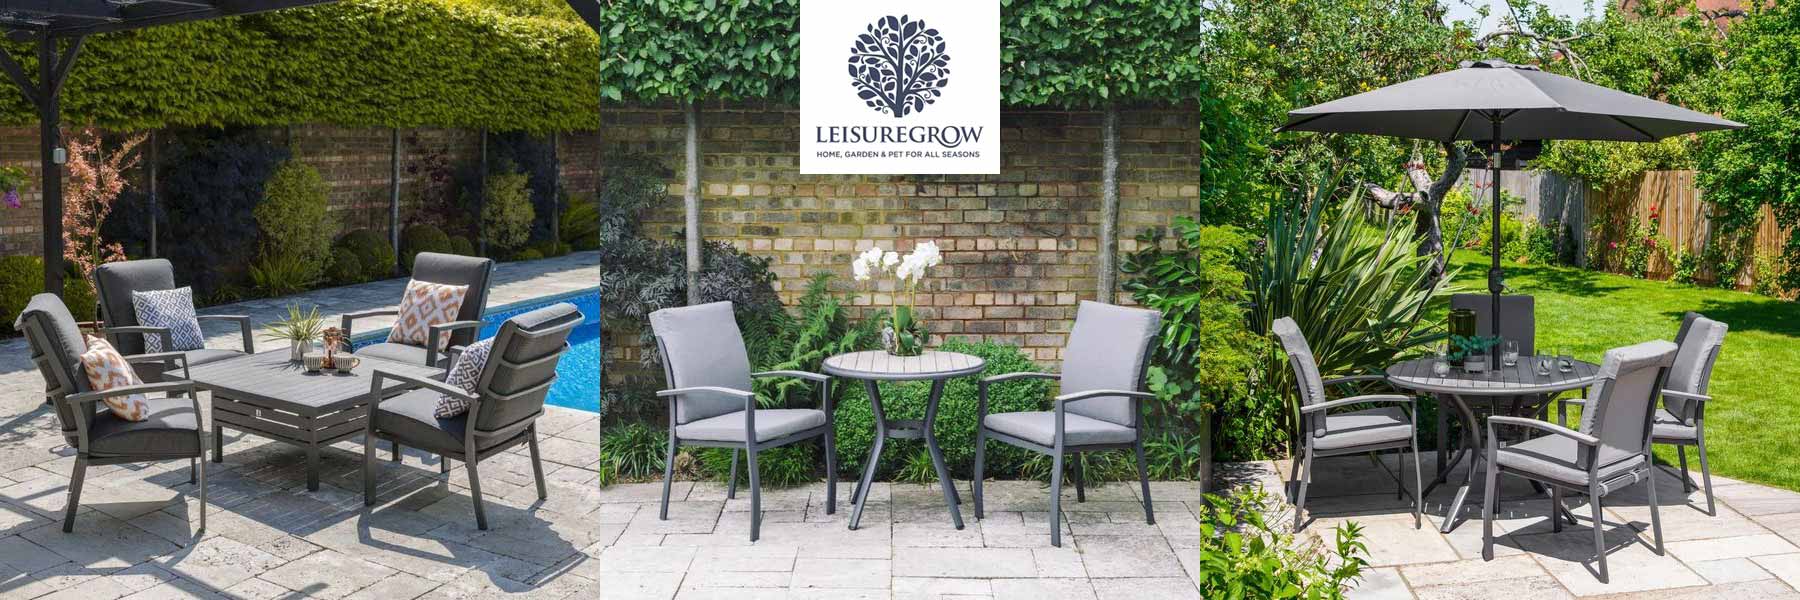 LeisureGrow Garden Furniture